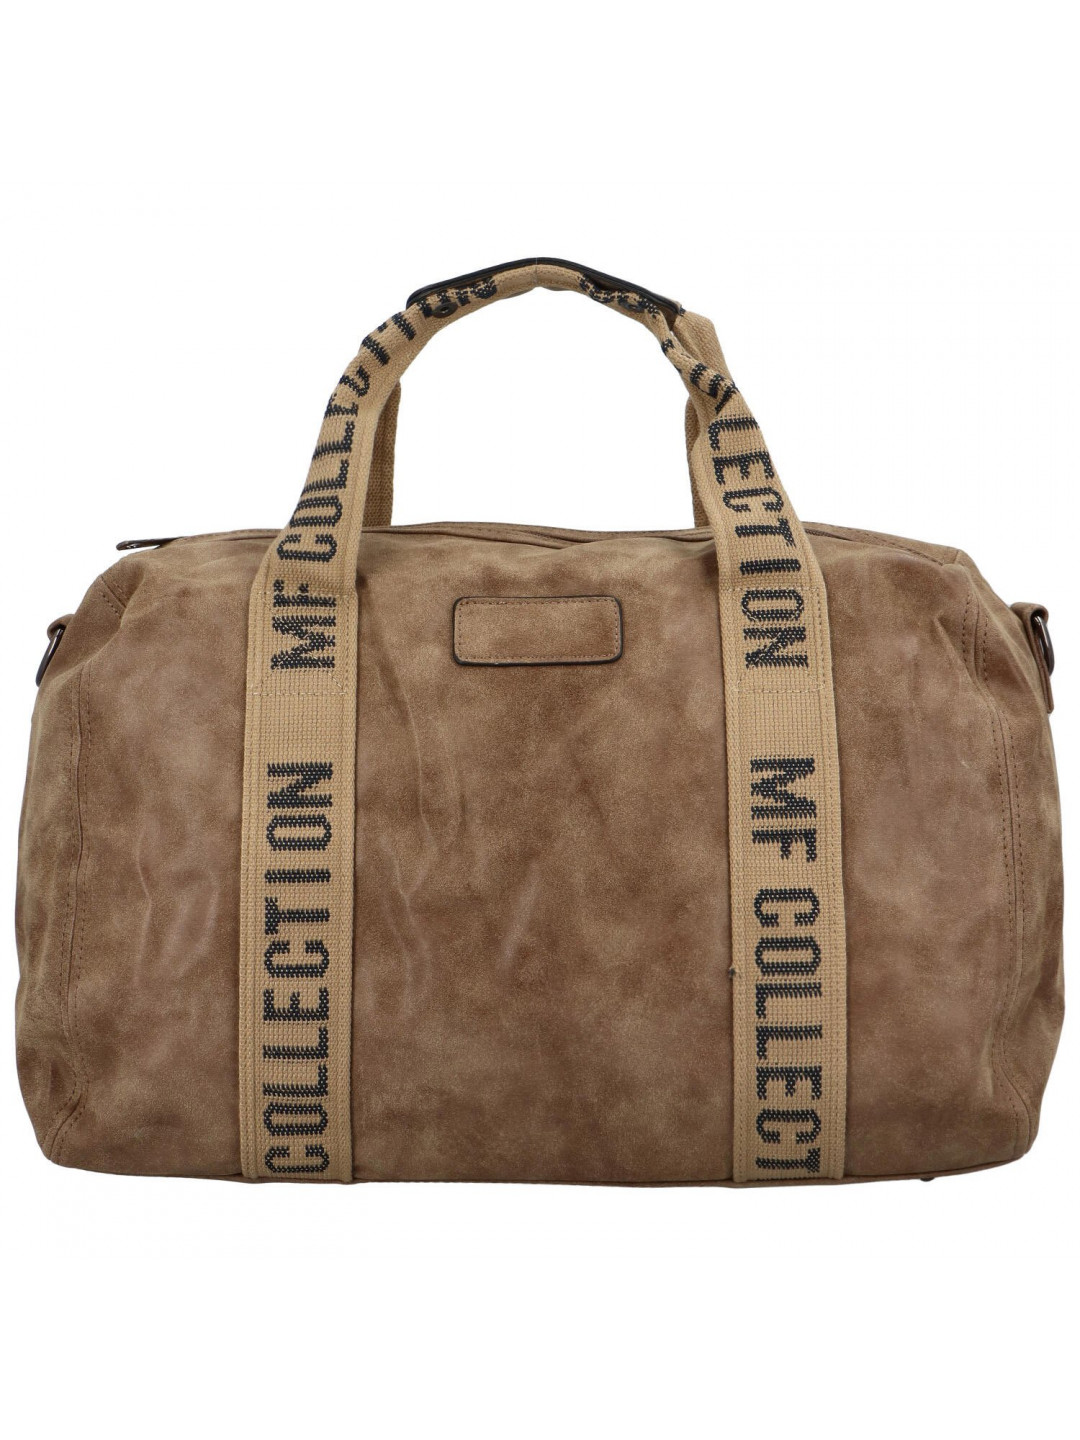 Cestovní dámská koženková kabelka Gita zimní kolekce hnědá